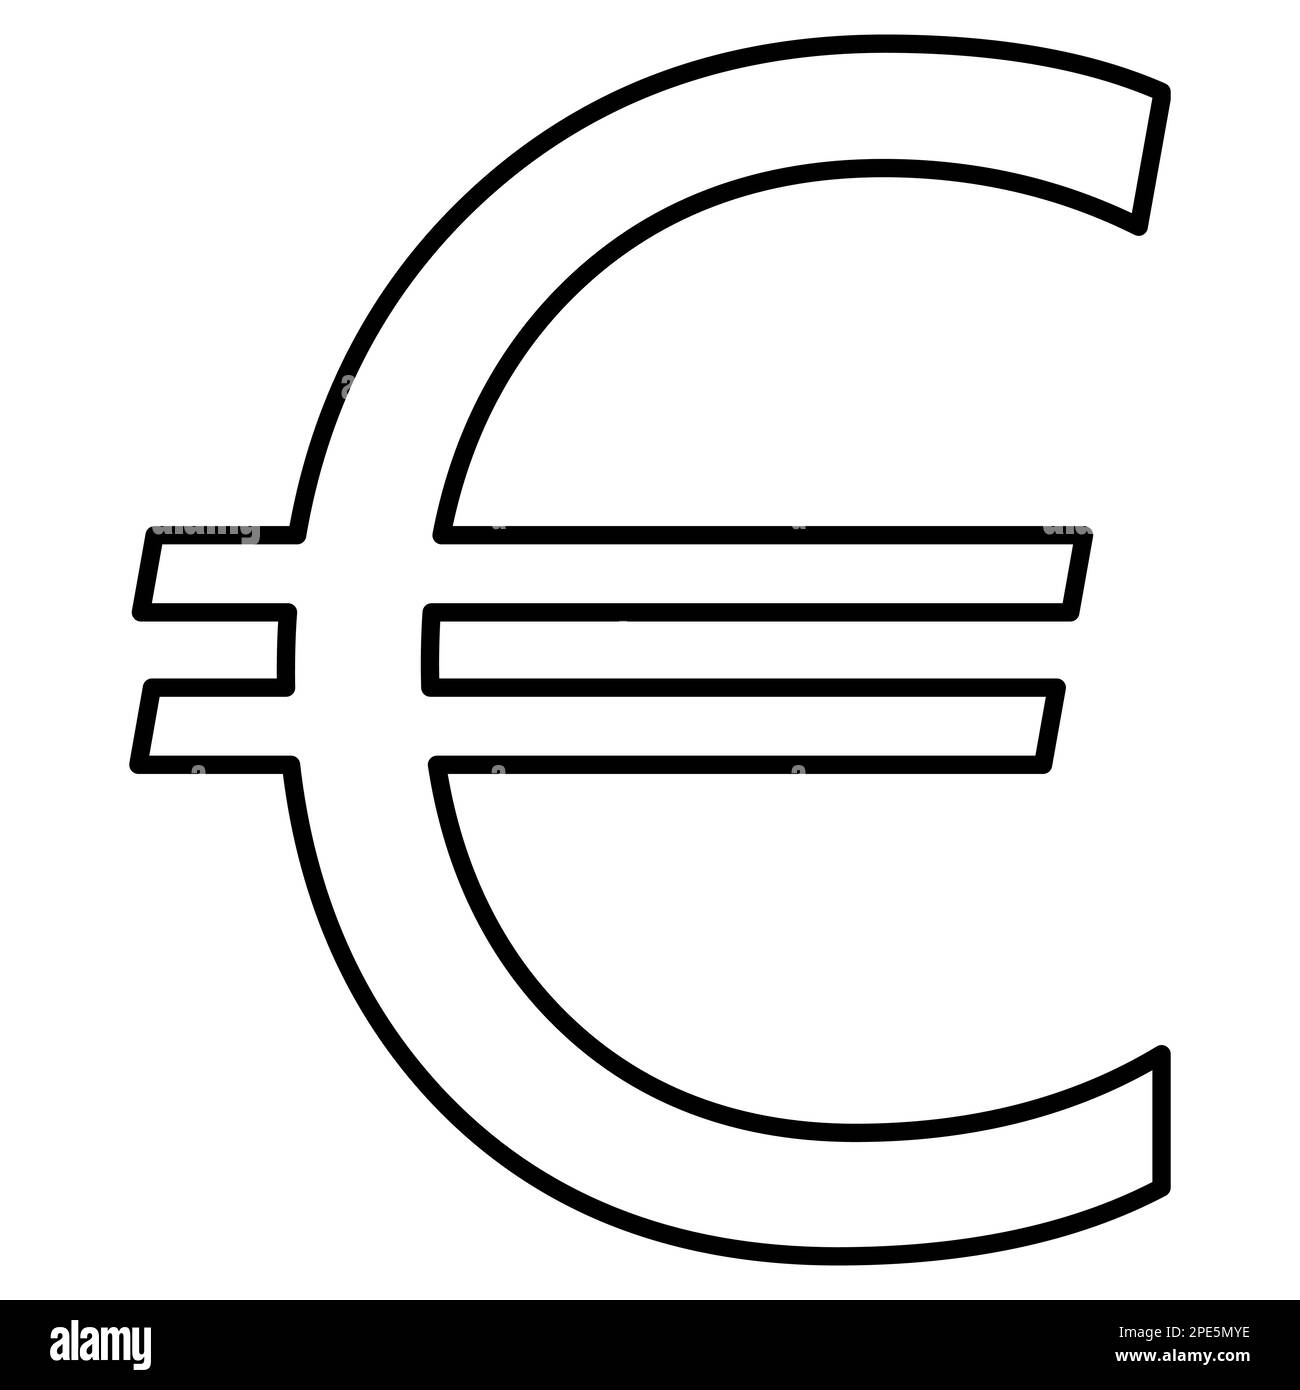 Il simbolo della valuta dell'Unione europea euro EUR delineare la vista frontale isolata su sfondo bianco. Moneta della Banca centrale europea. Clipart del vettore. Illustrazione Vettoriale